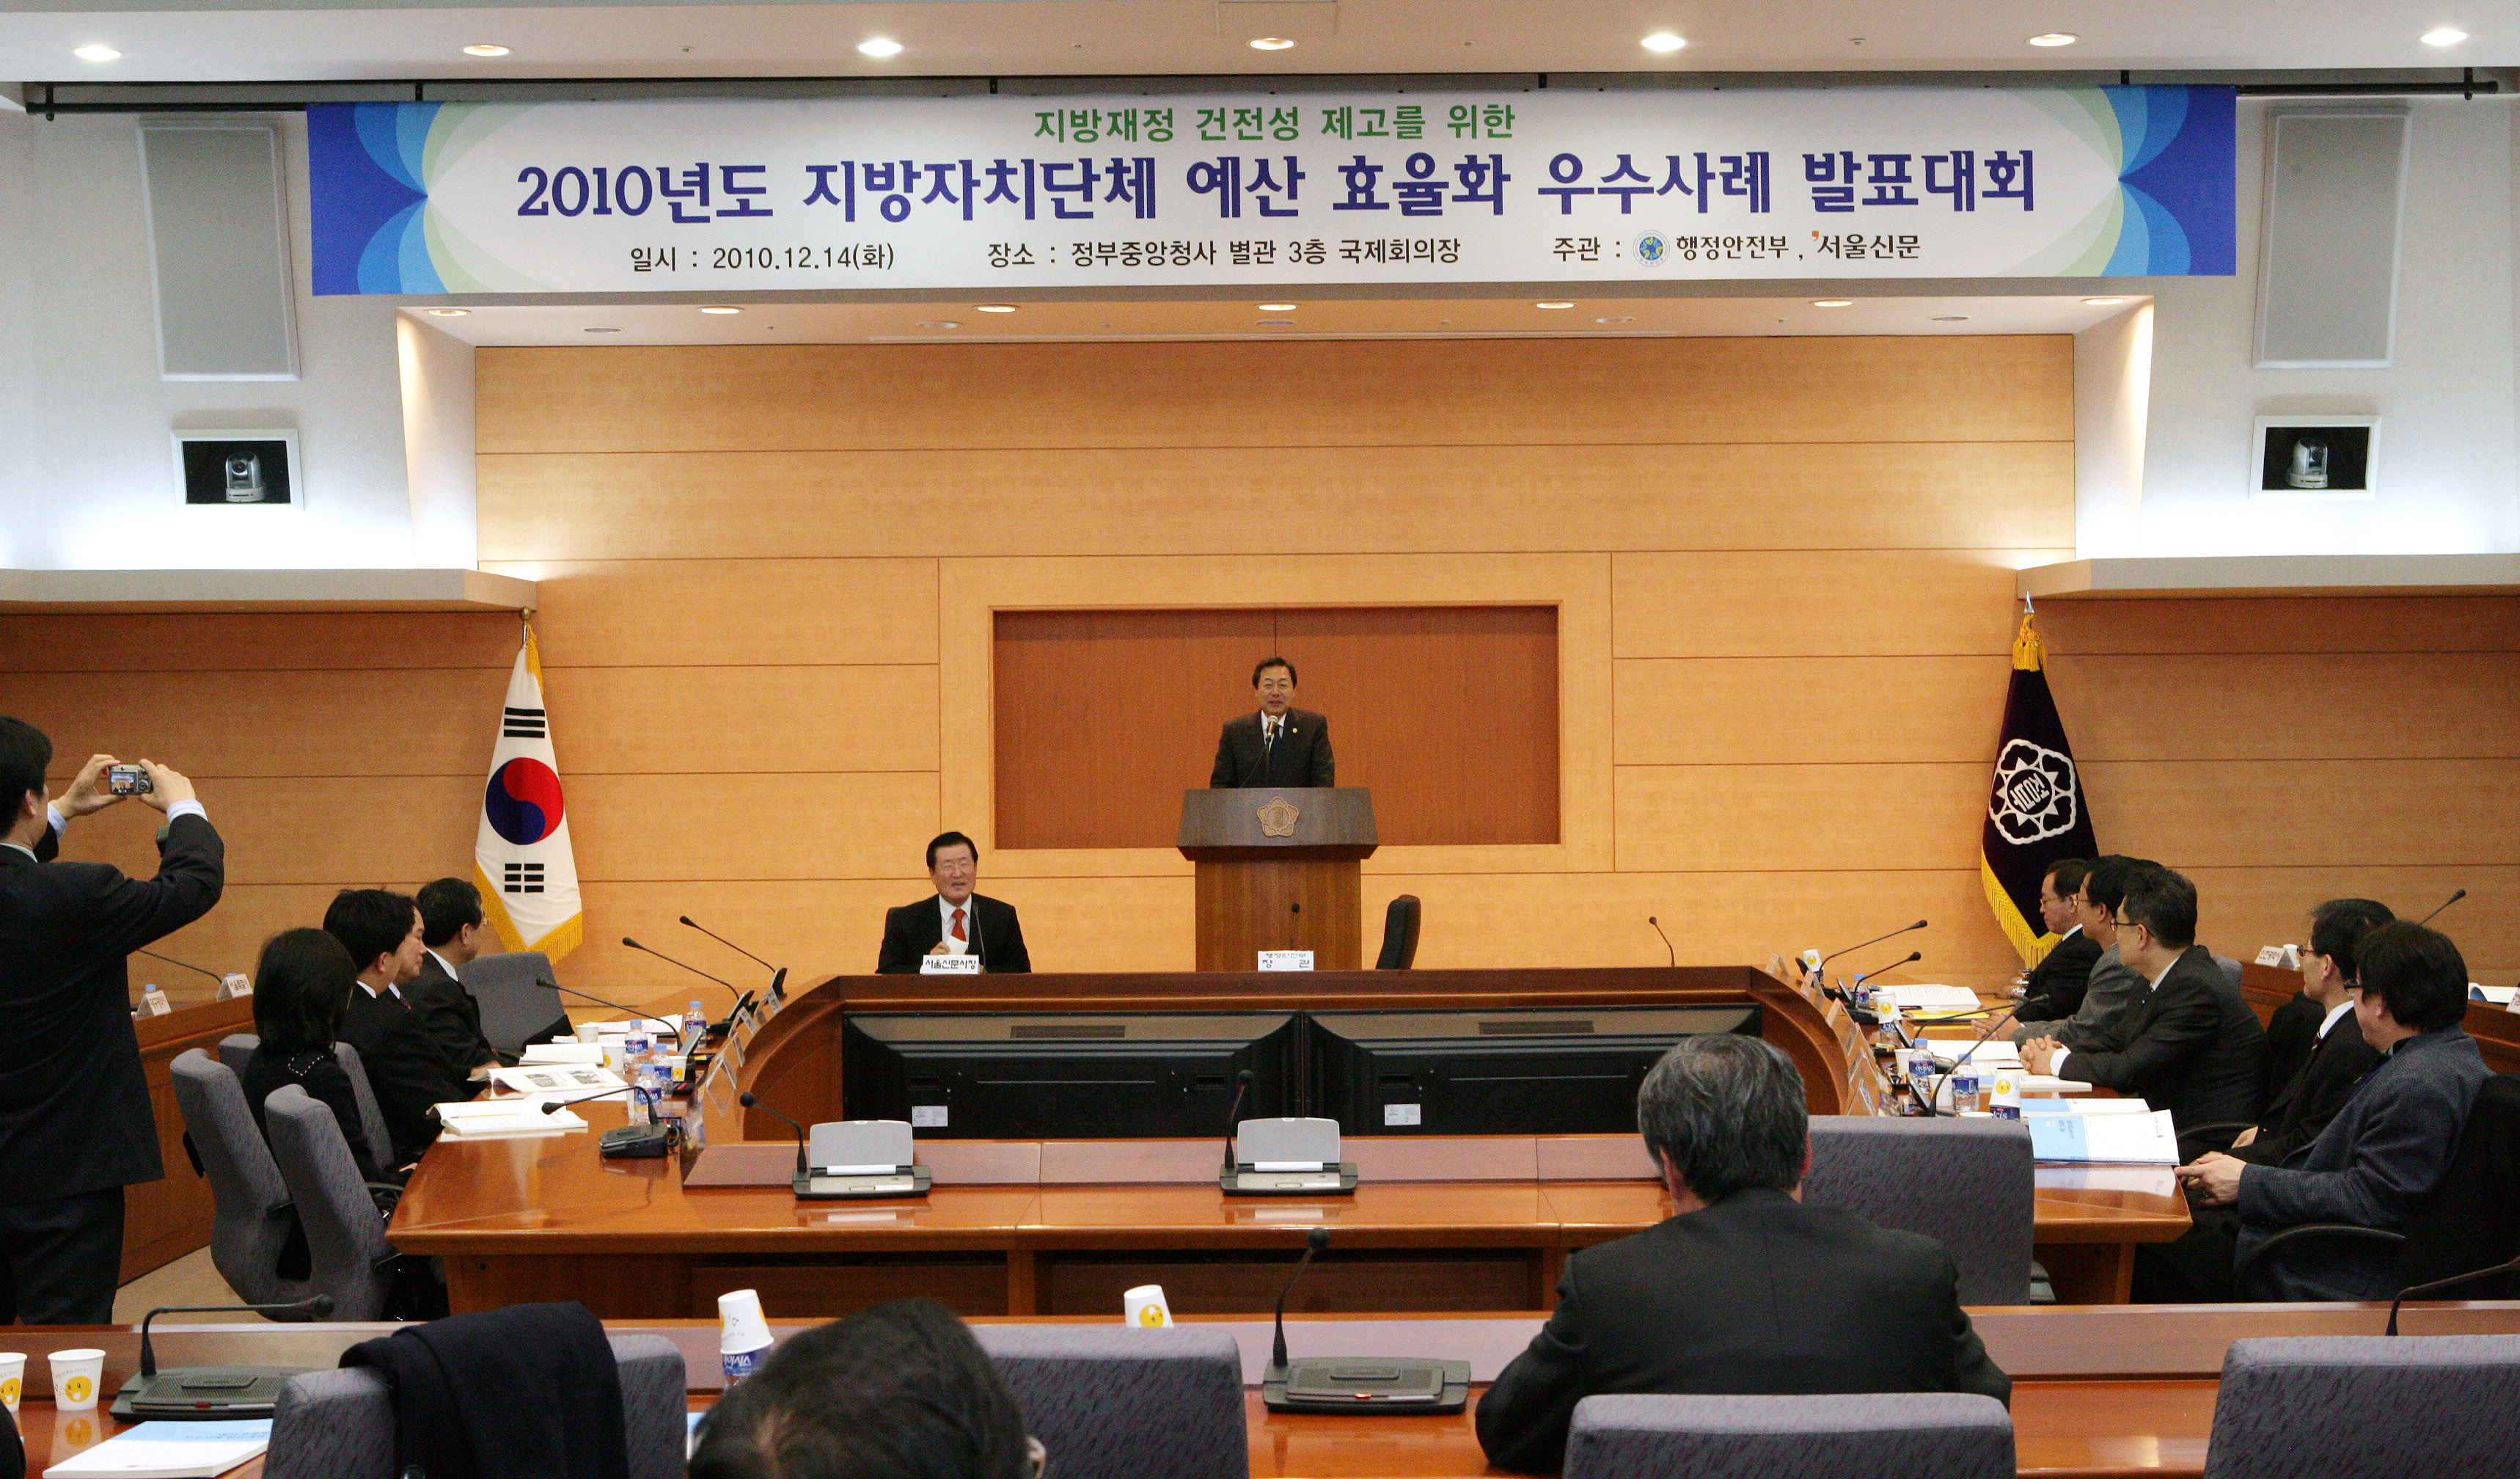 2010년도 지방자치단체 예산효율화 우수사례 발표대회